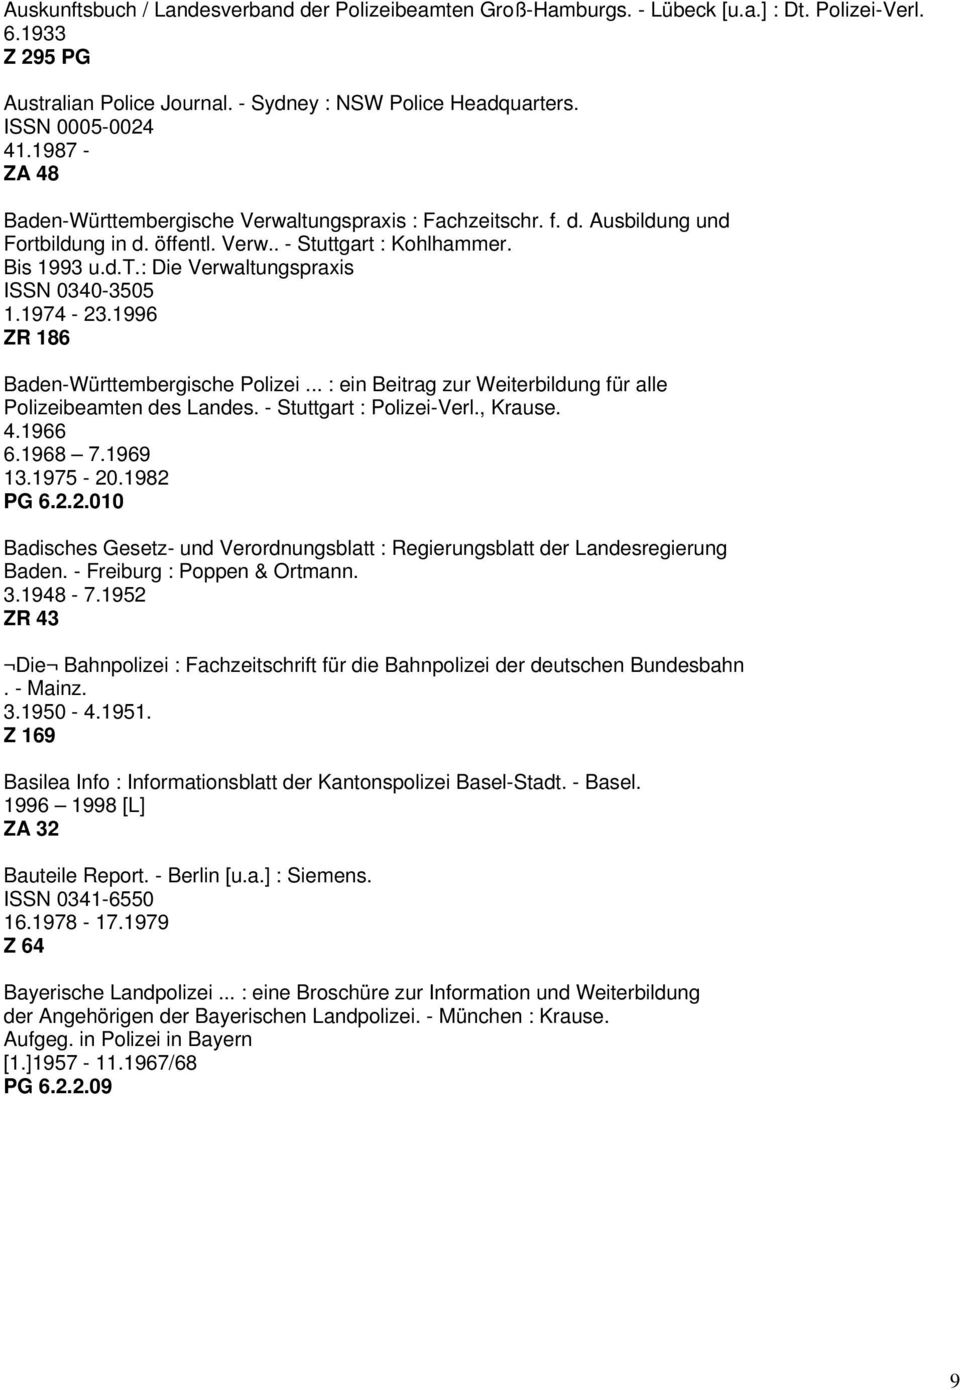 1974-23.1996 ZR 186 Baden-Württembergische Polizei... : ein Beitrag zur Weiterbildung für alle Polizeibeamten des Landes. - Stuttgart : Polizei-Verl., Krause. 4.1966 6.1968 7.1969 13.1975-20.